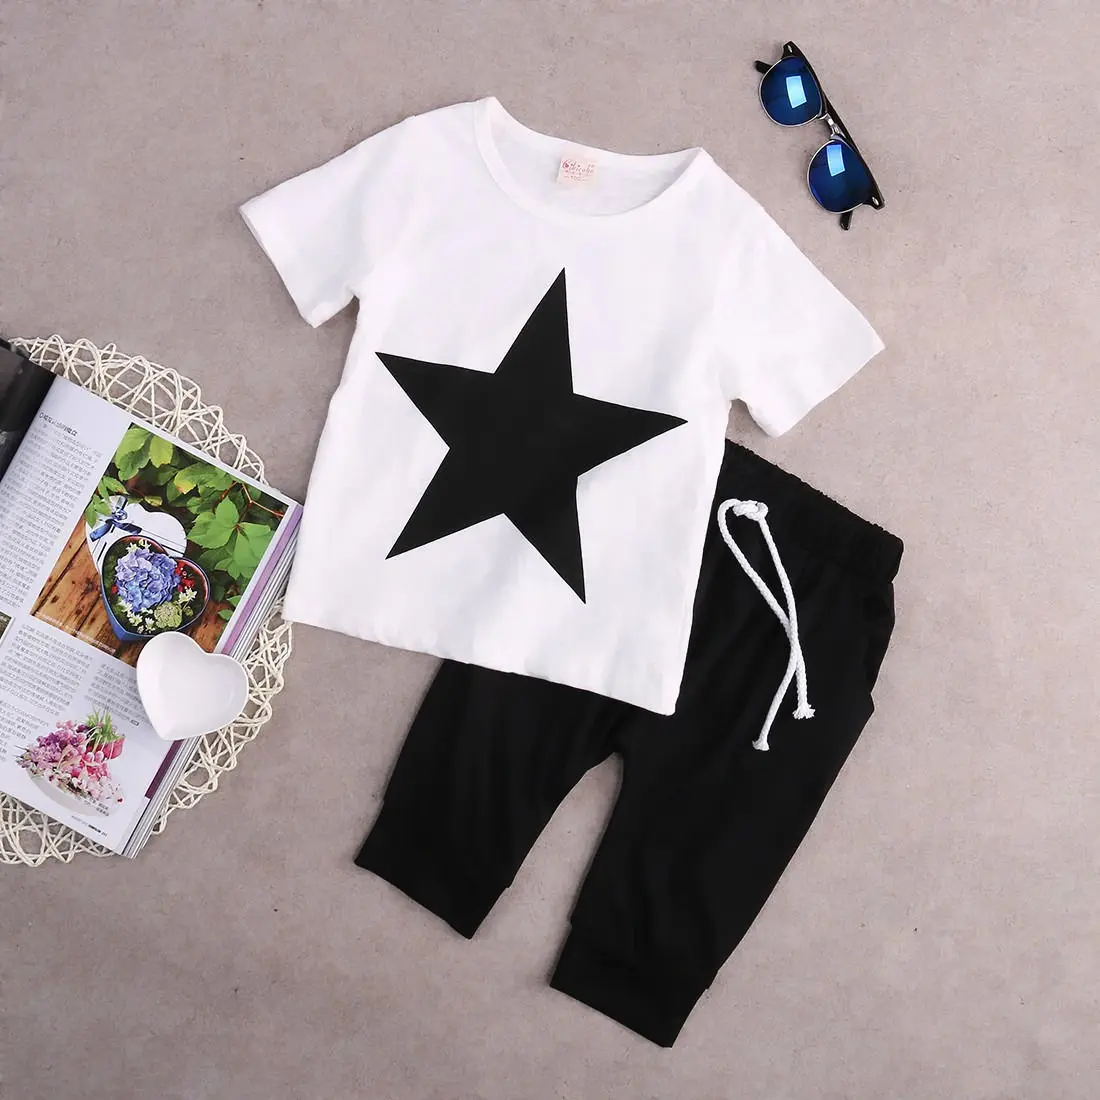 Niño Niños Ropa de Niños del Bebé Star T-shirt Tops, Pantalones Harem, 2pcs Trajes Conjunto de Ropa 2-7Y 3